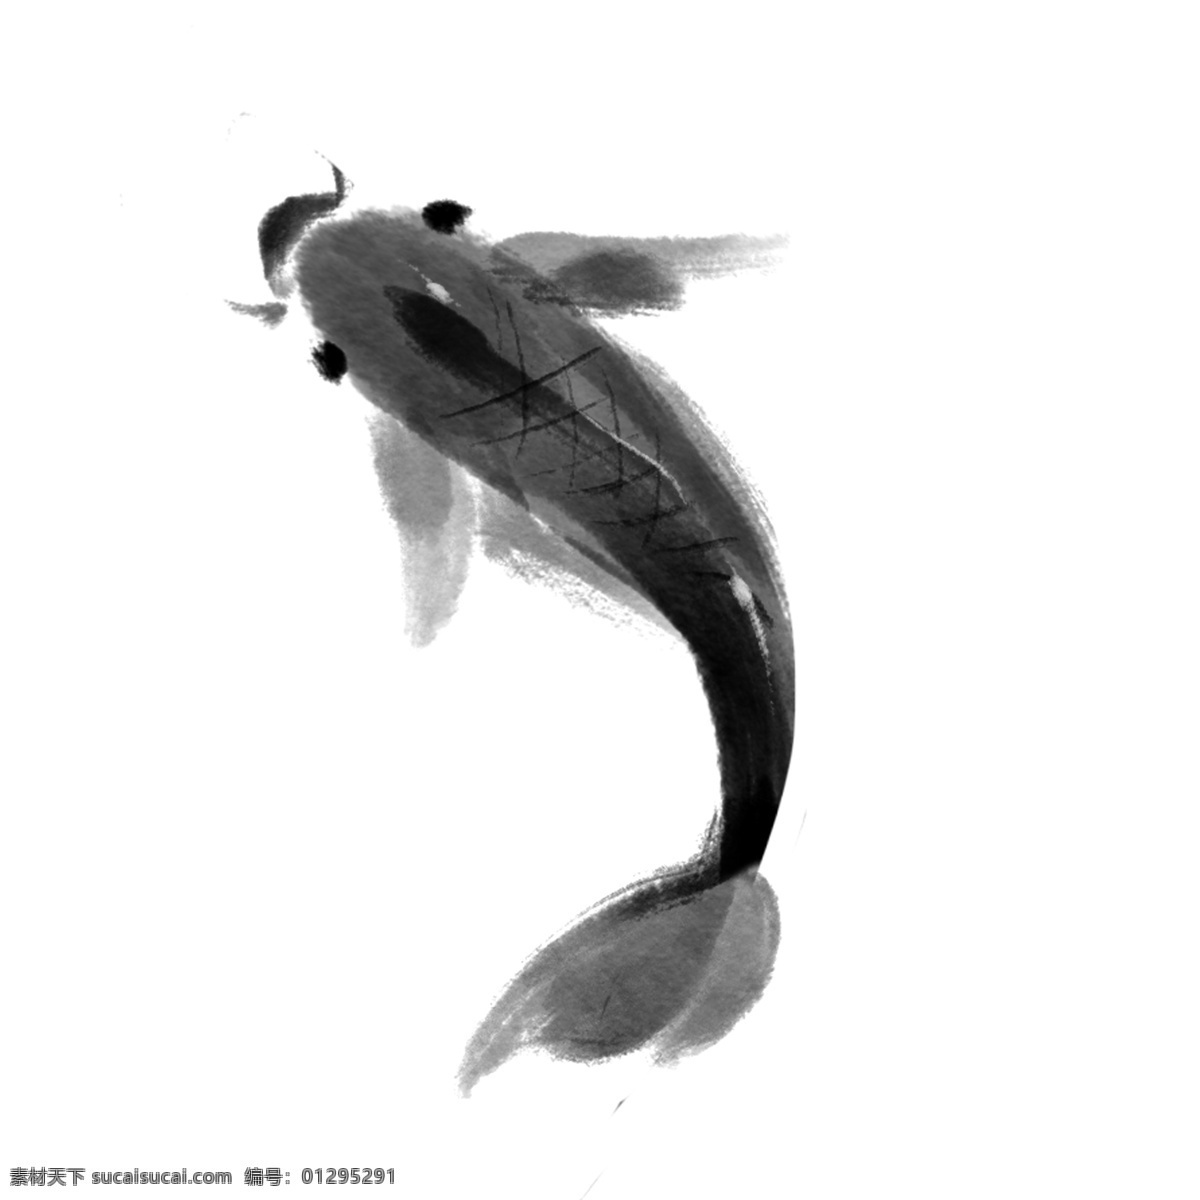 黑色 水墨 鲤鱼 插画 黑色的鲤鱼 卡通的插画 鲤鱼的插画 活泼的鲤鱼 摆尾的鲤鱼 跳舞的鲤鱼